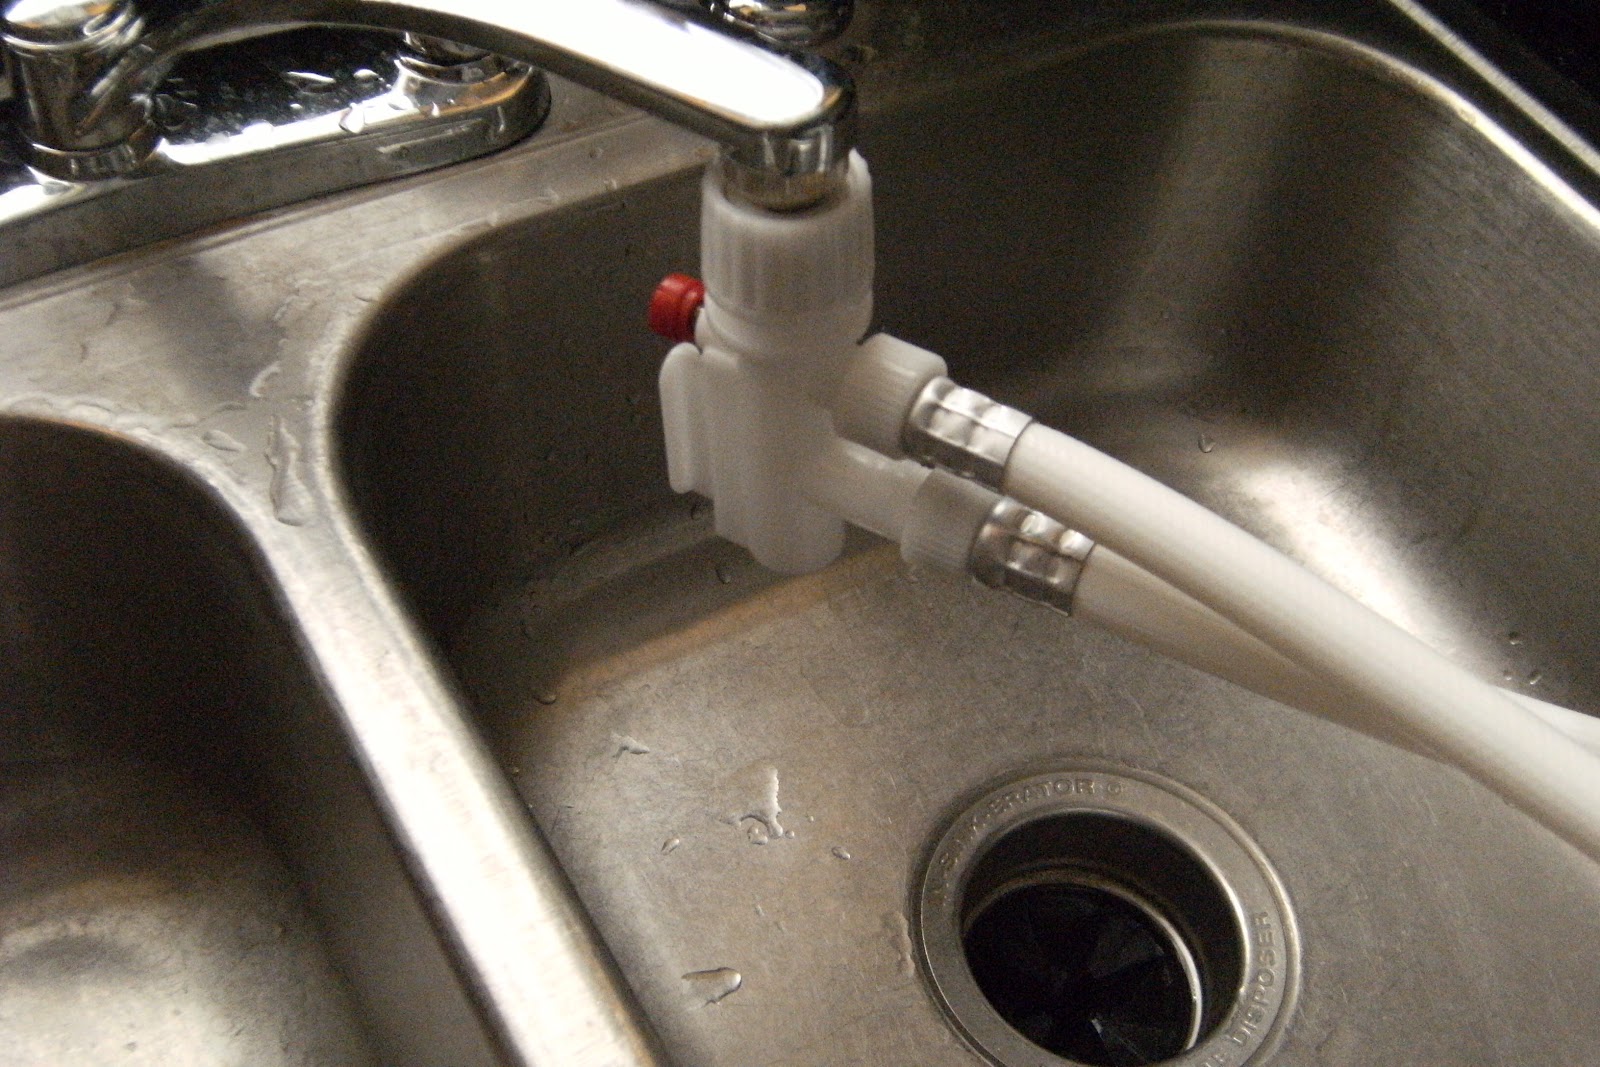 washing machine kitchen sink adapter